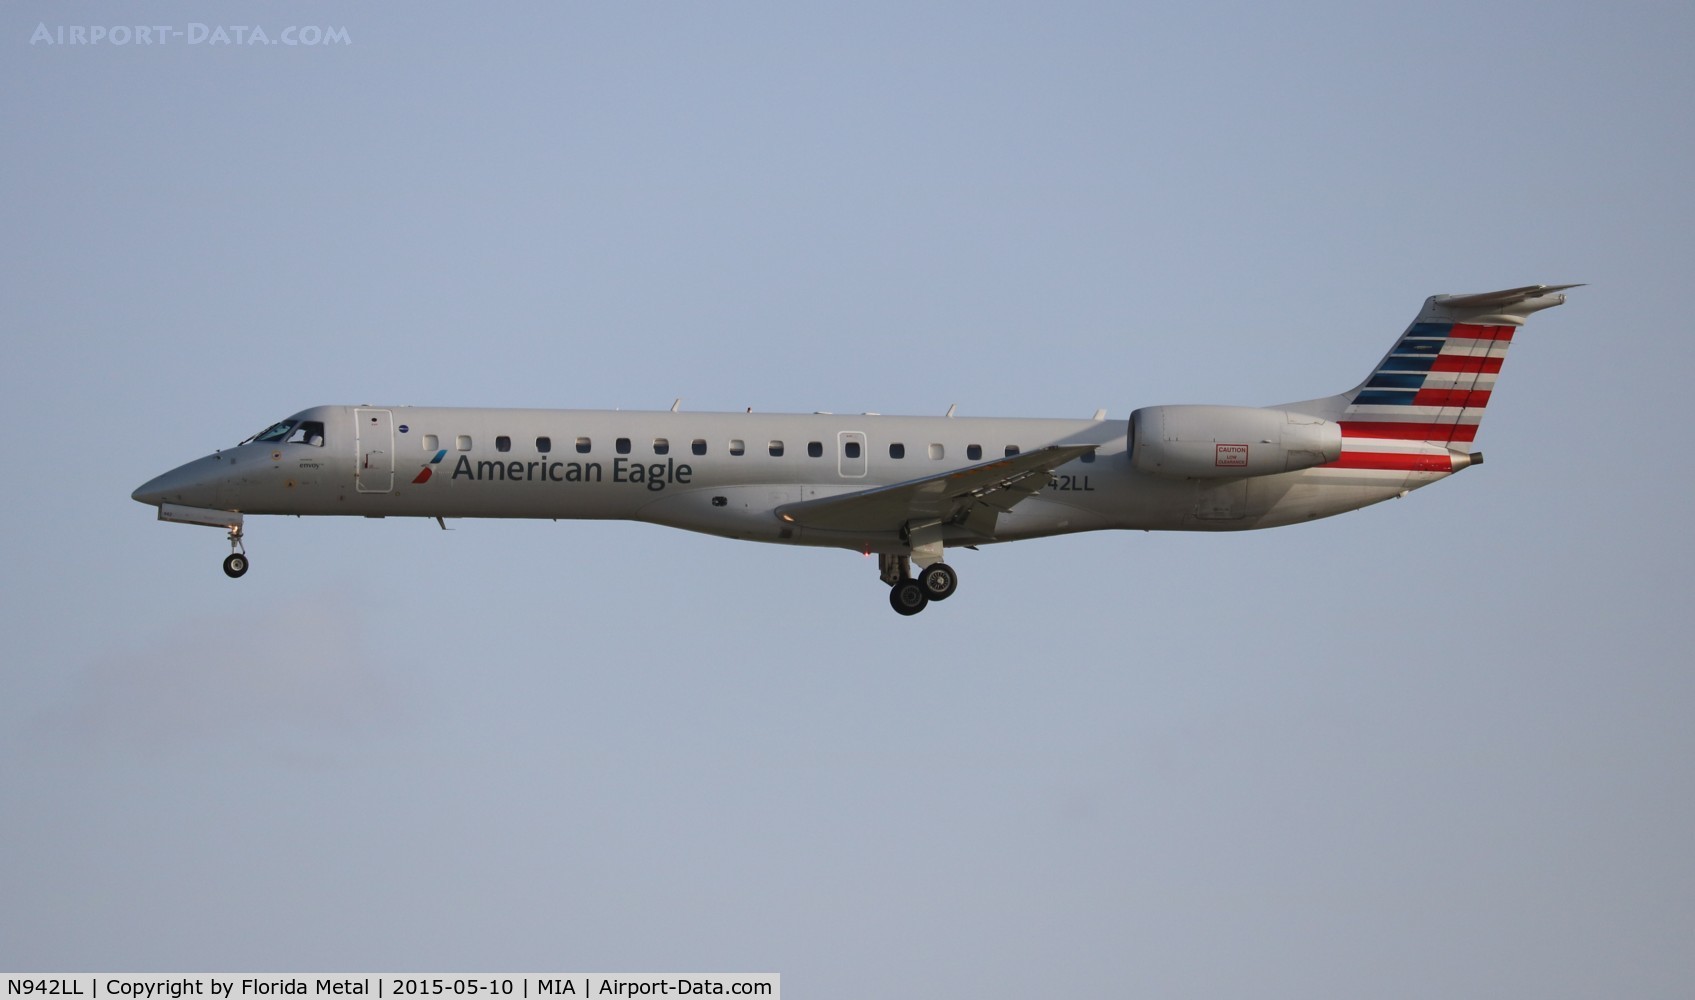 N942LL, 2005 Embraer ERJ-145LR (EMB-145LR) C/N 14500930, American Eagle